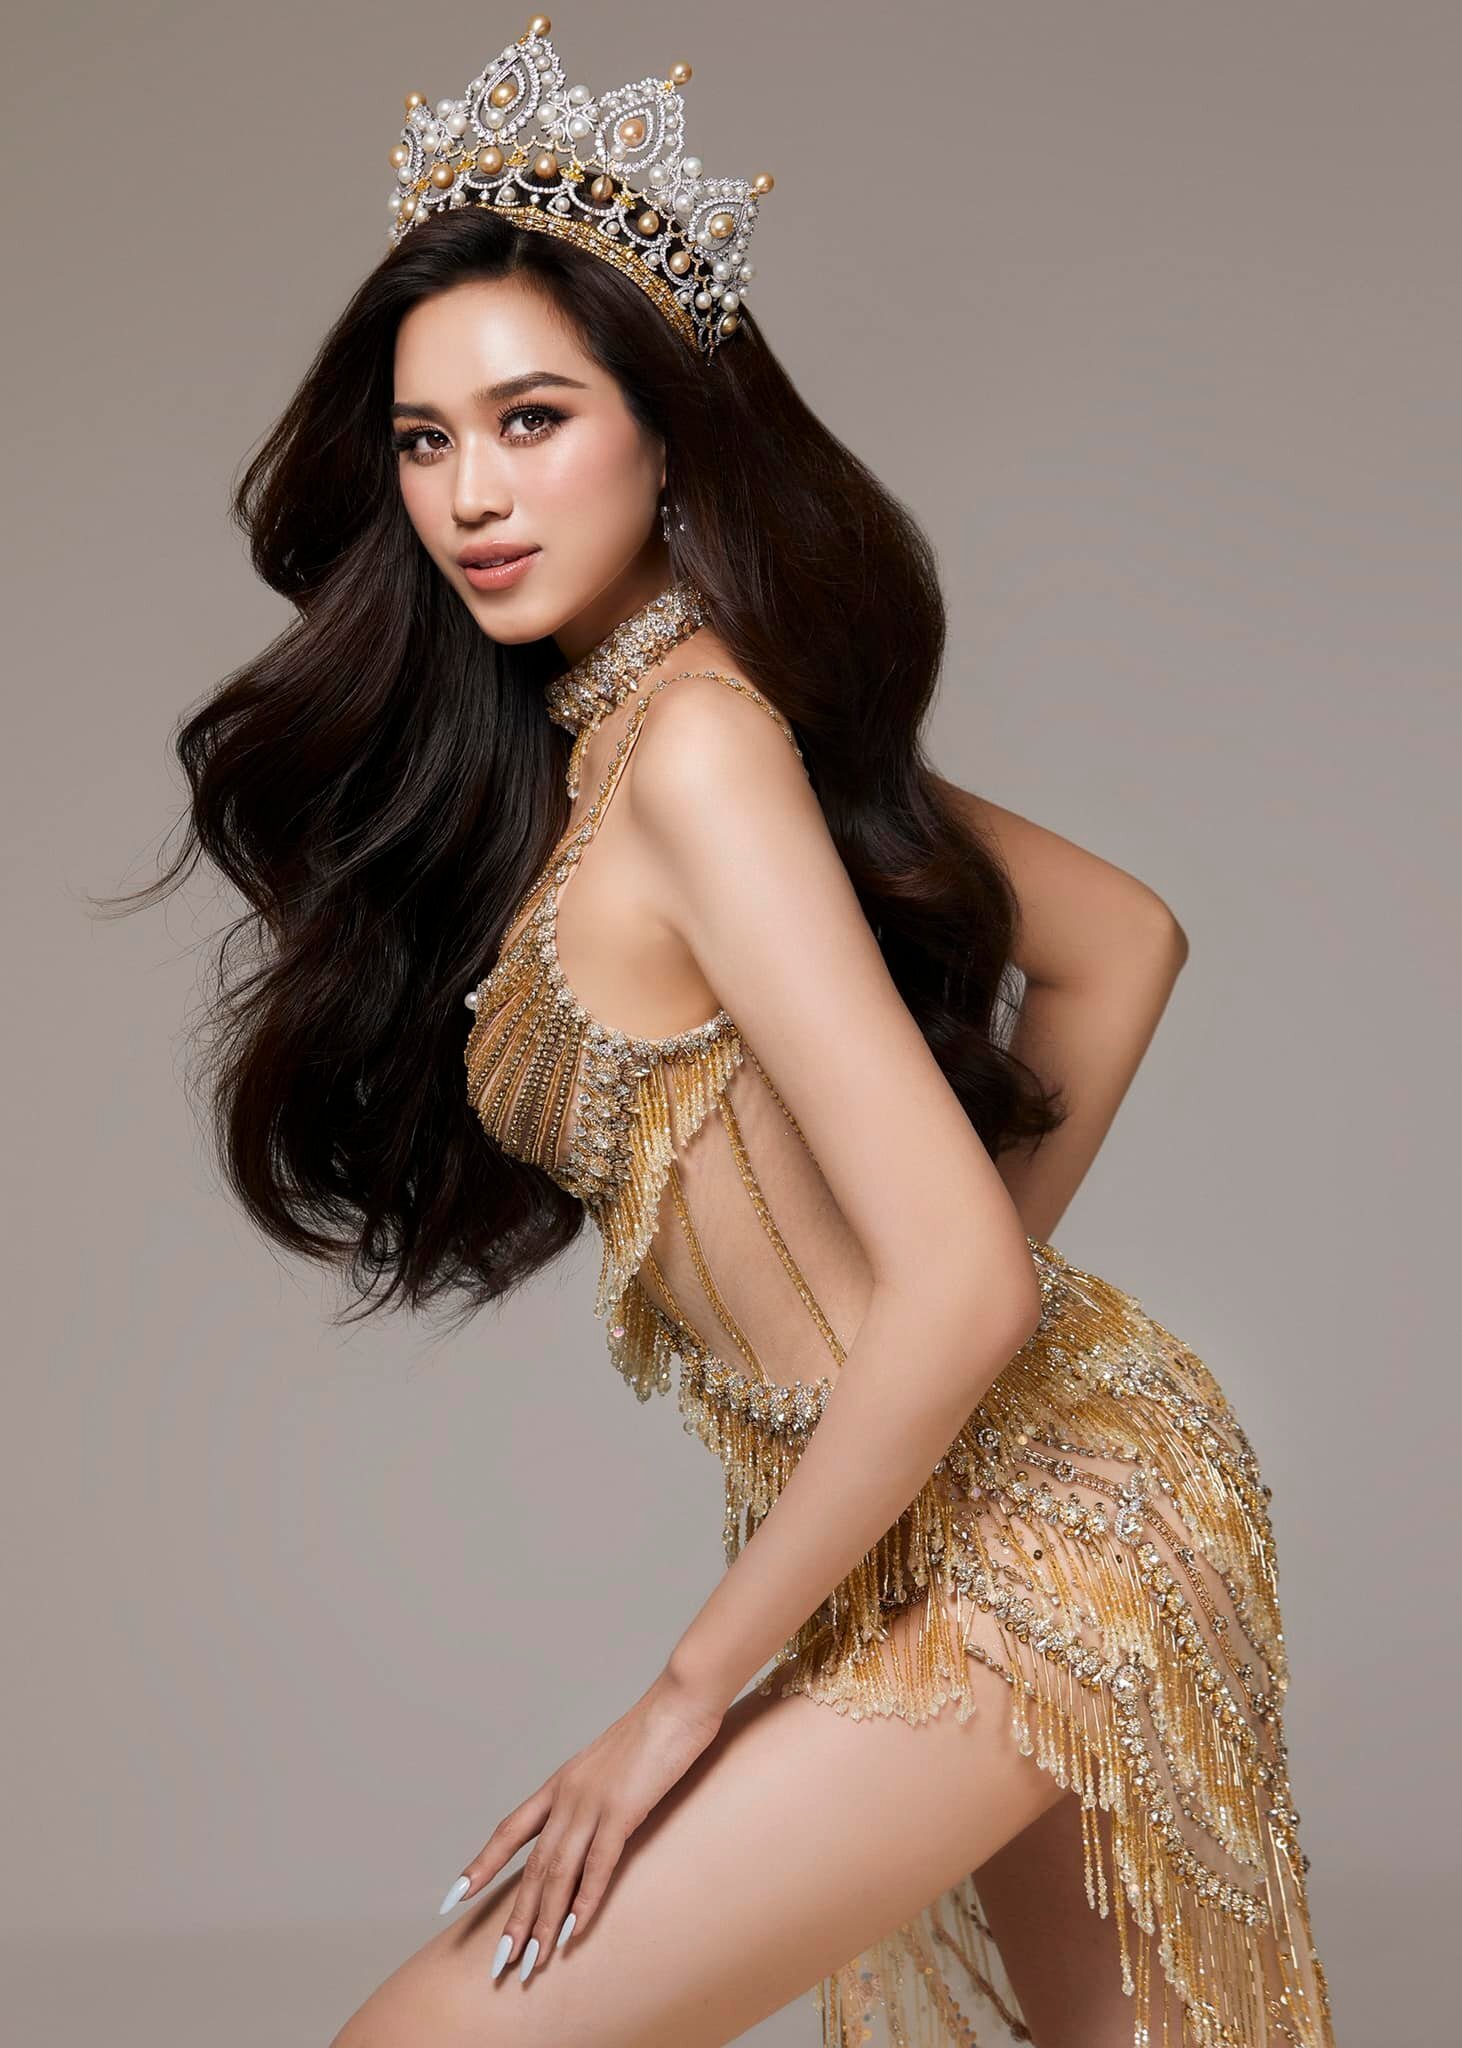 Hành trình thay đổi nhan sắc của Hoa hậu Đỗ Thị Hà  - 7